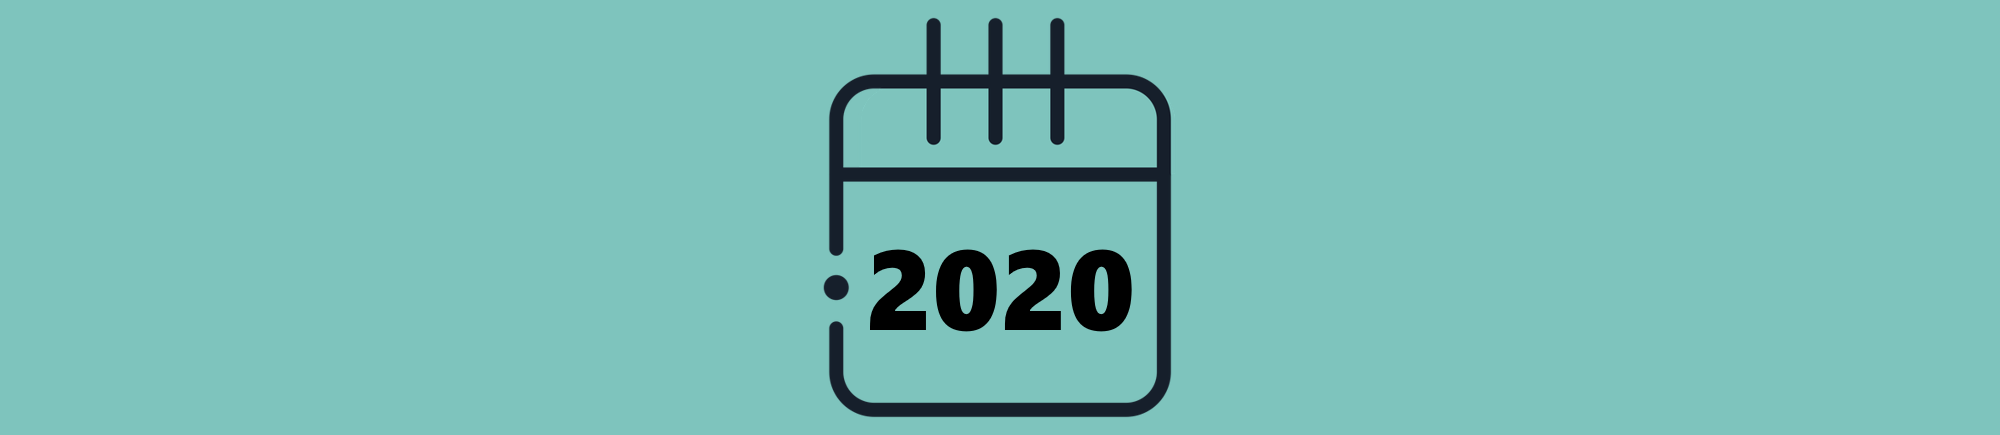 Resumo do Ano de 2020 do Sua Produtividade e planos para 2021